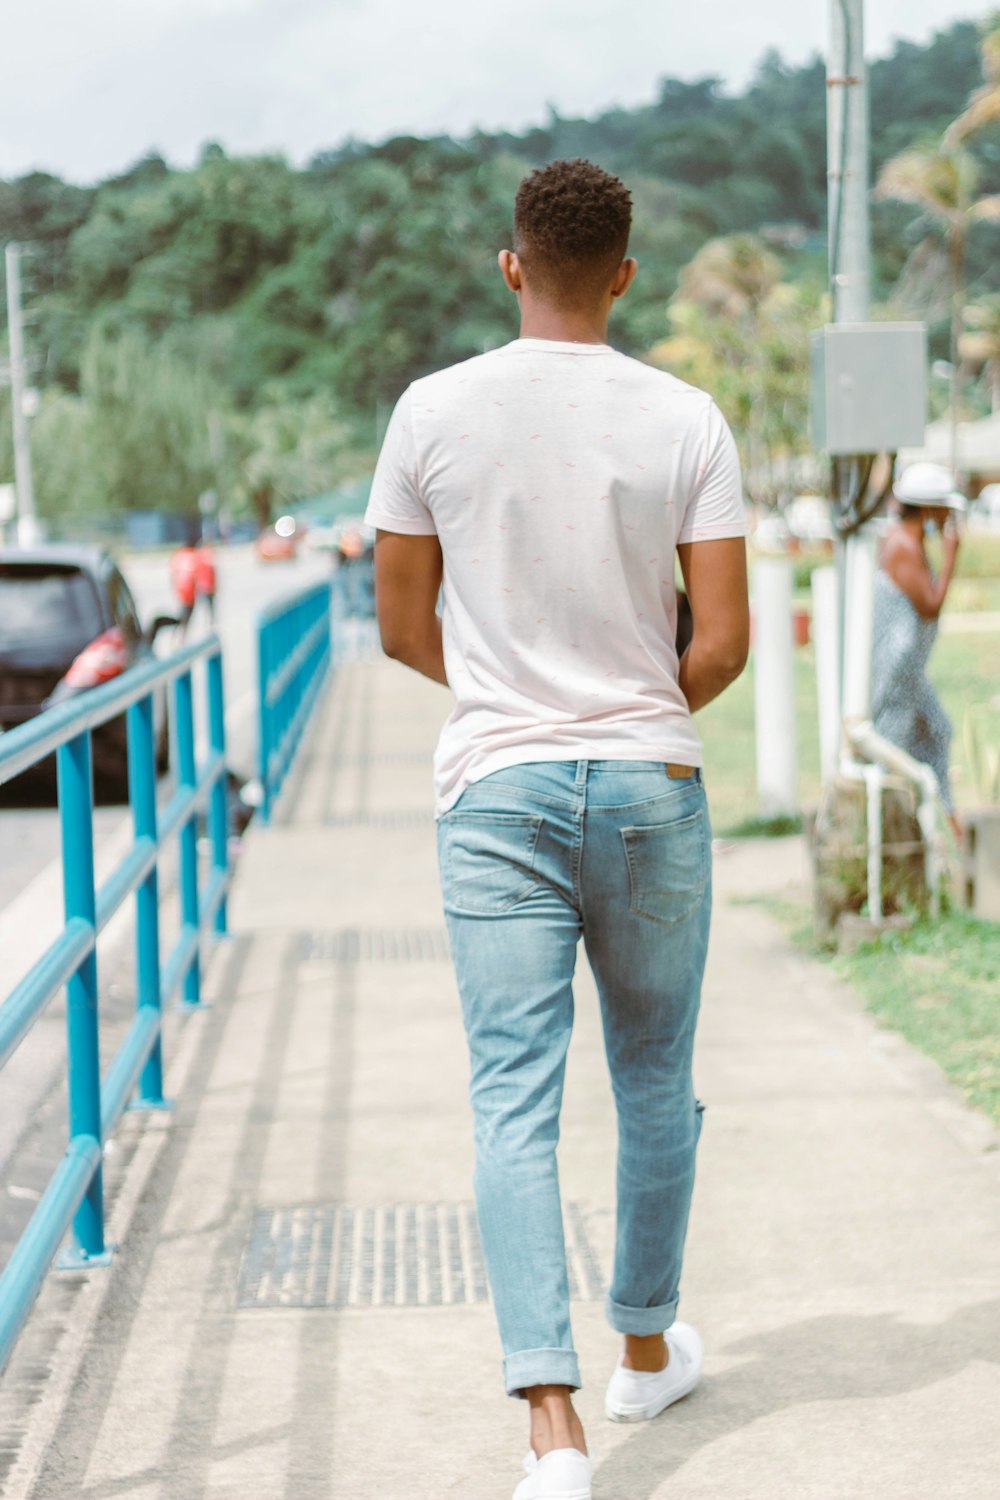 a man walking down a sidewalk next to a blue fence